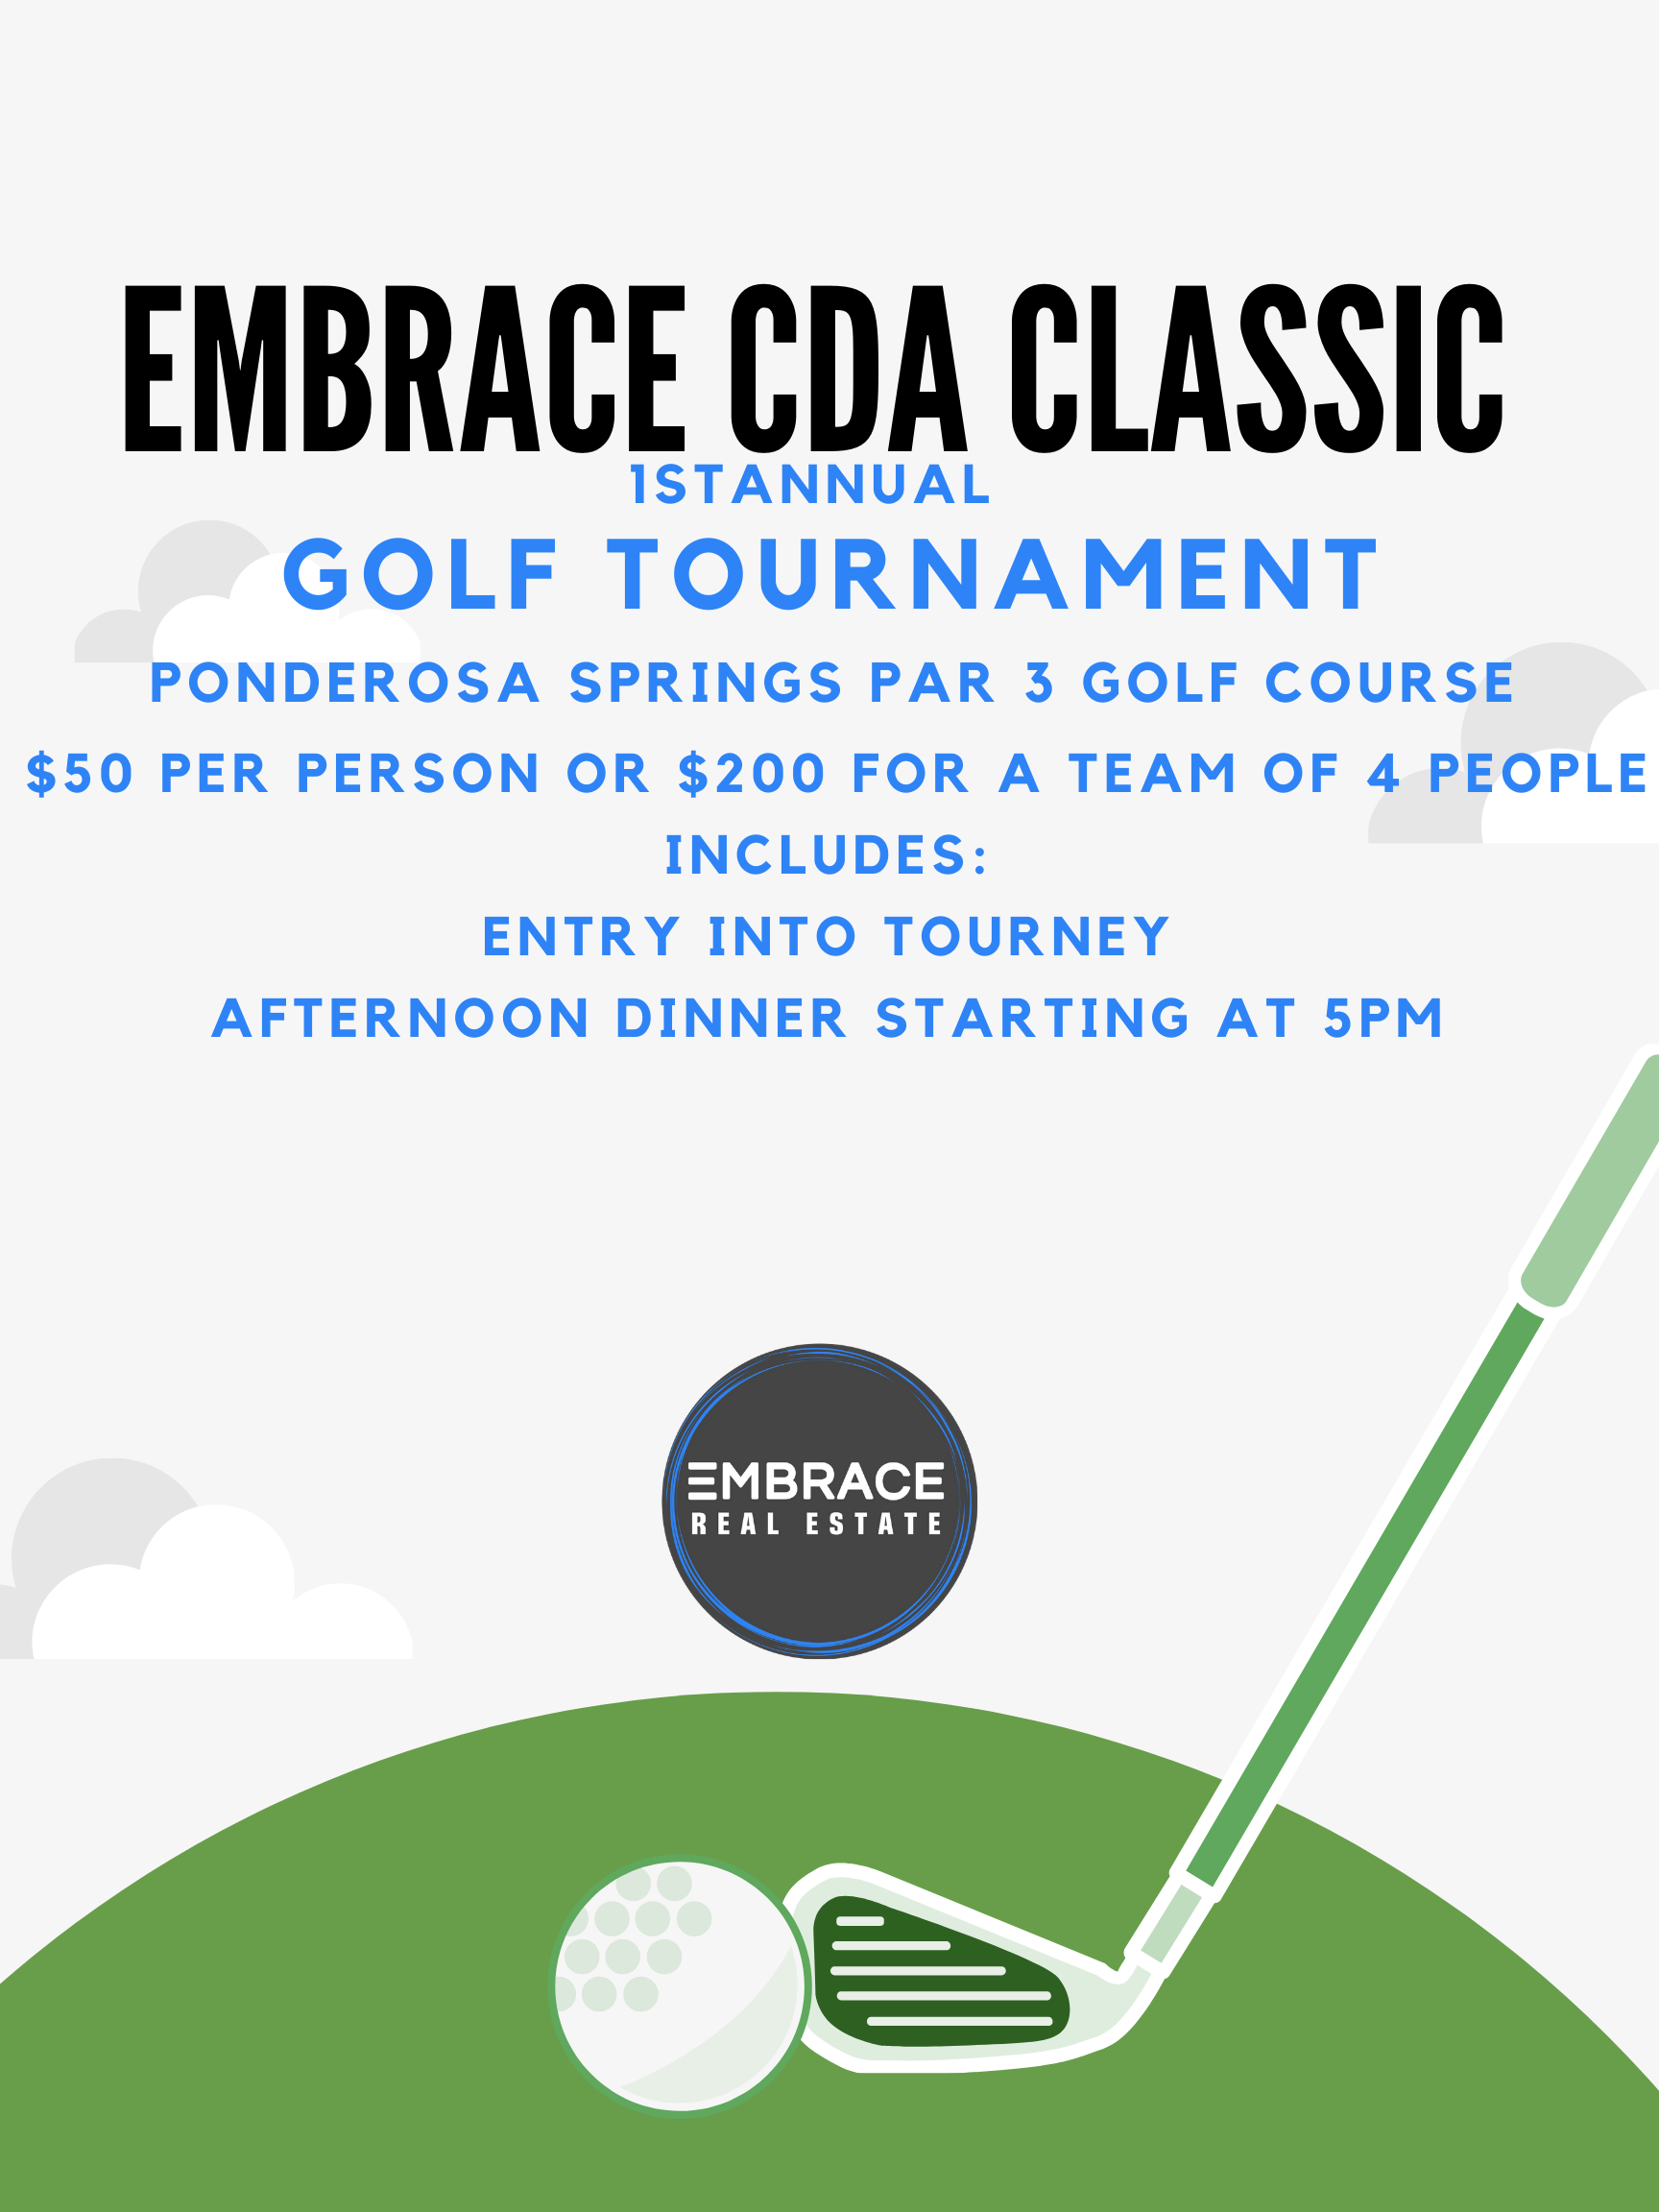 Embrace CDA Classic Golf Tournament!